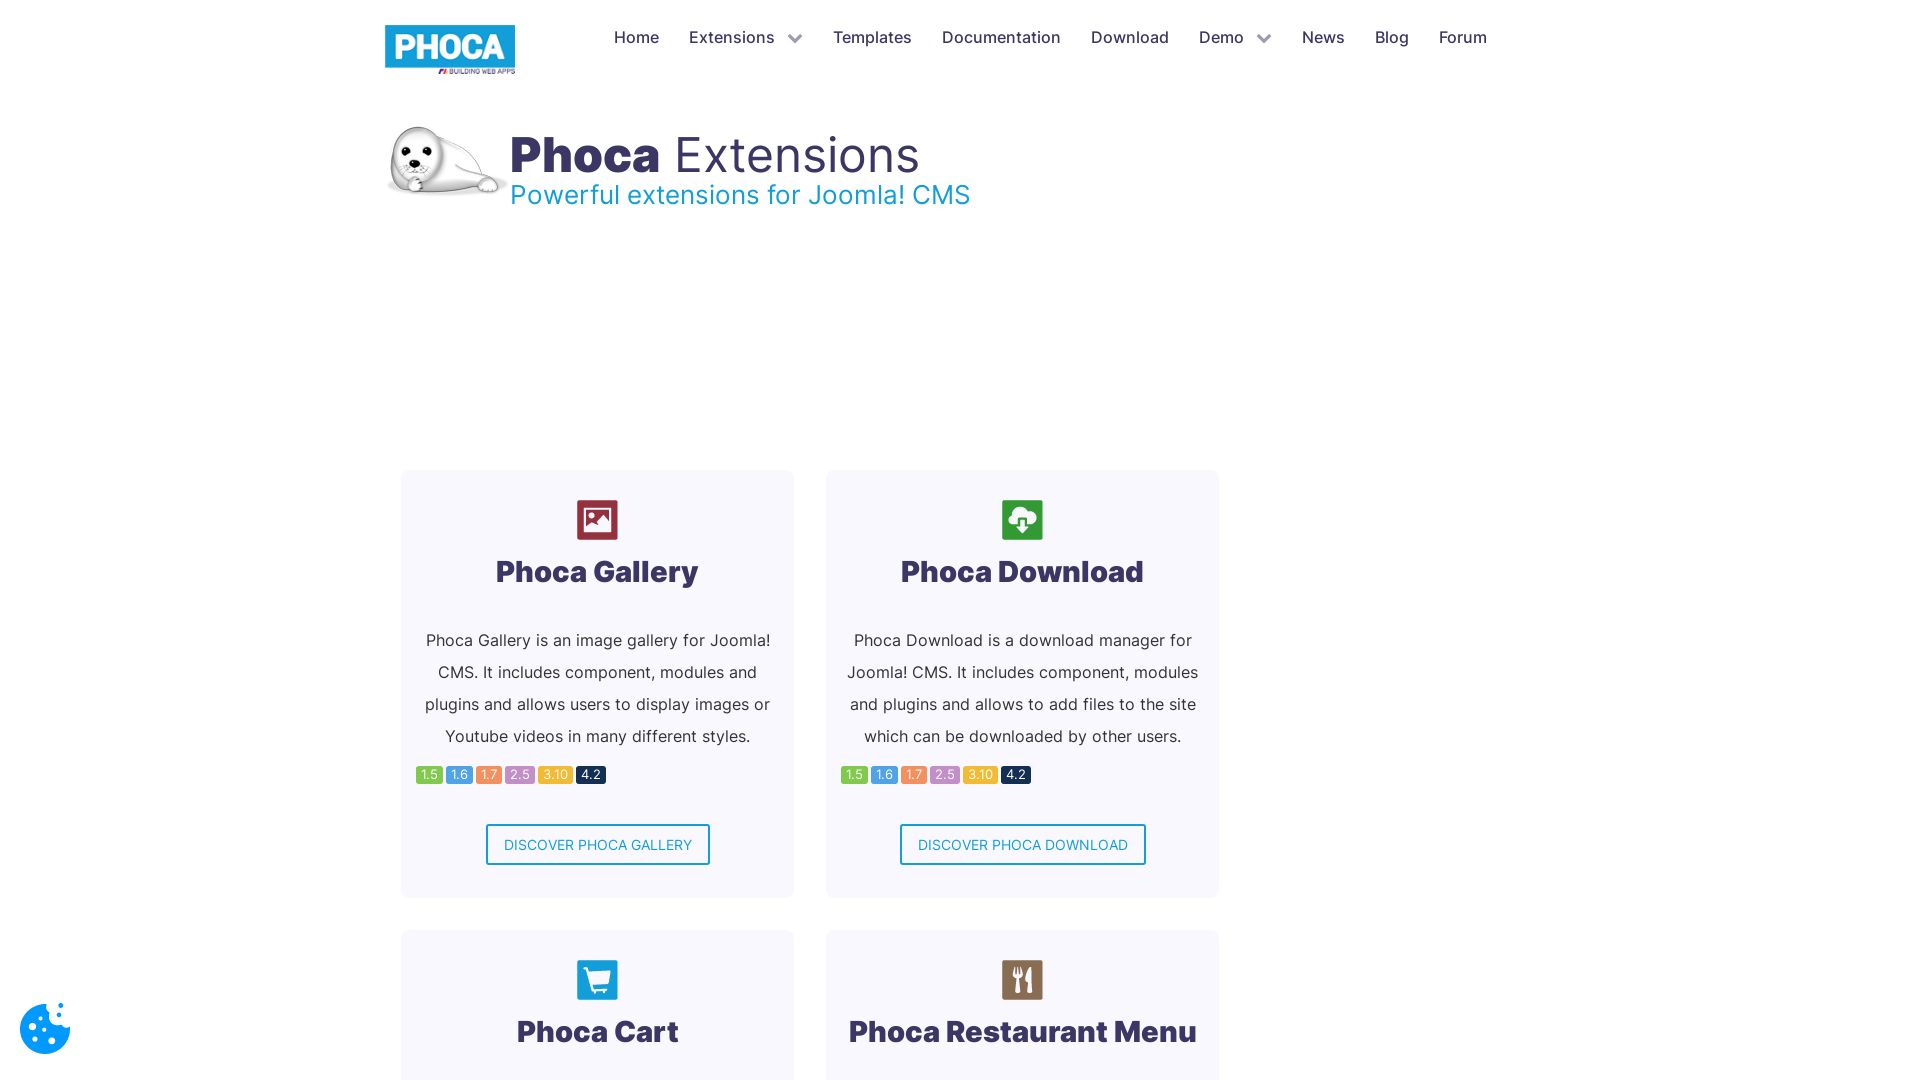 вебсайт phoca.cz Є   ONLINE